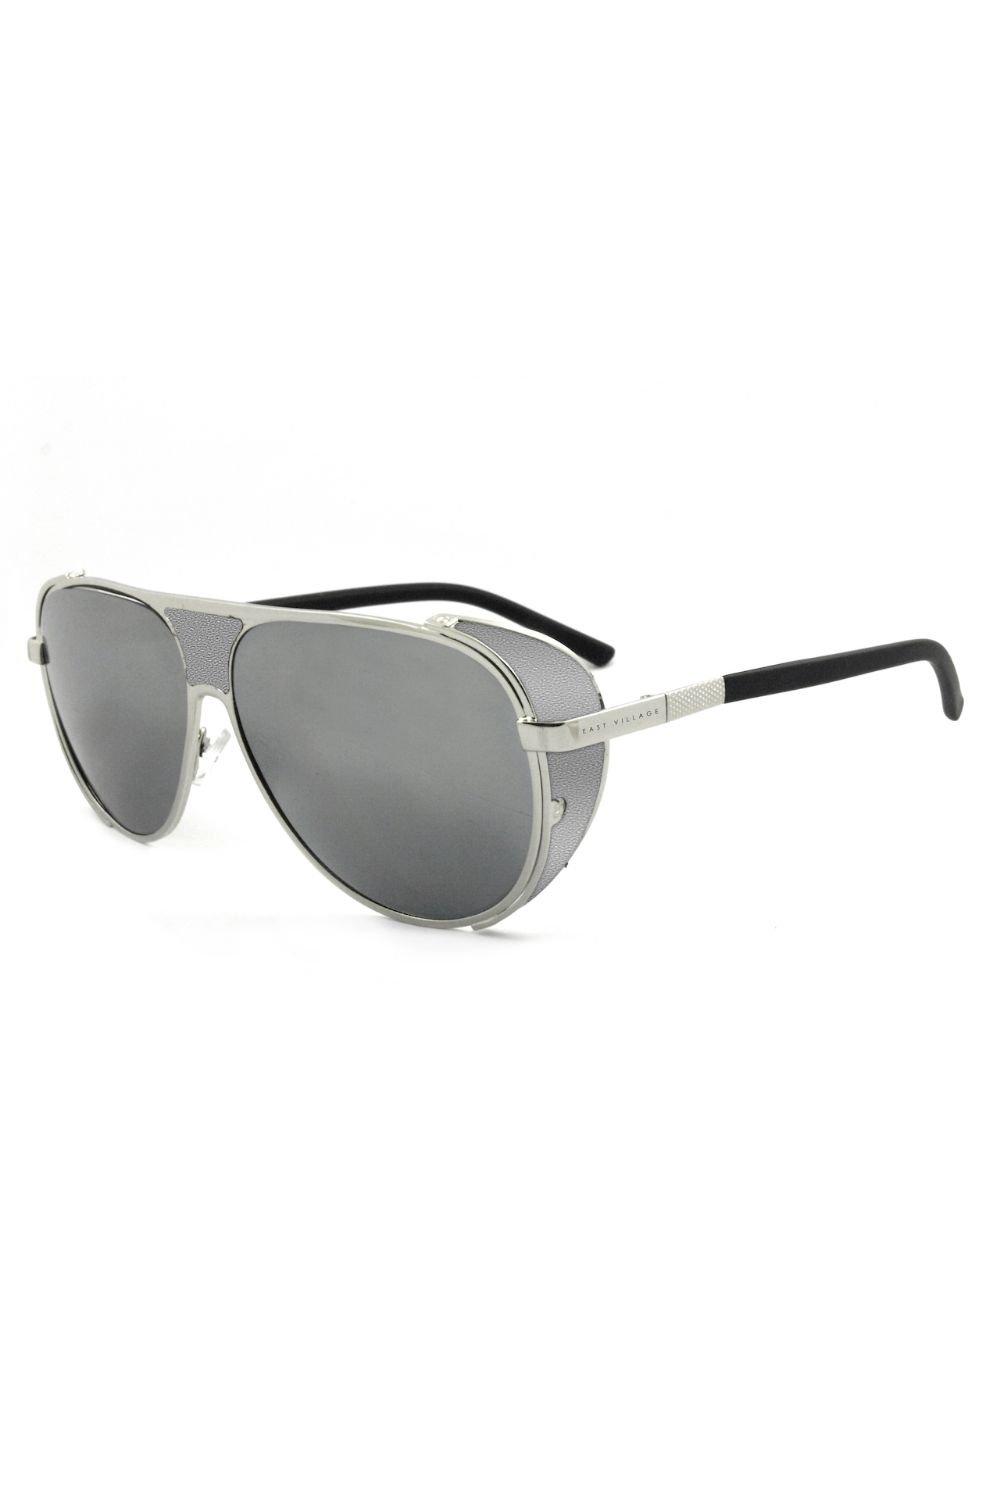 солнцезащитные очки авиаторы jordan east village серебро Солнцезащитные очки-авиаторы Jordan East Village, серебро